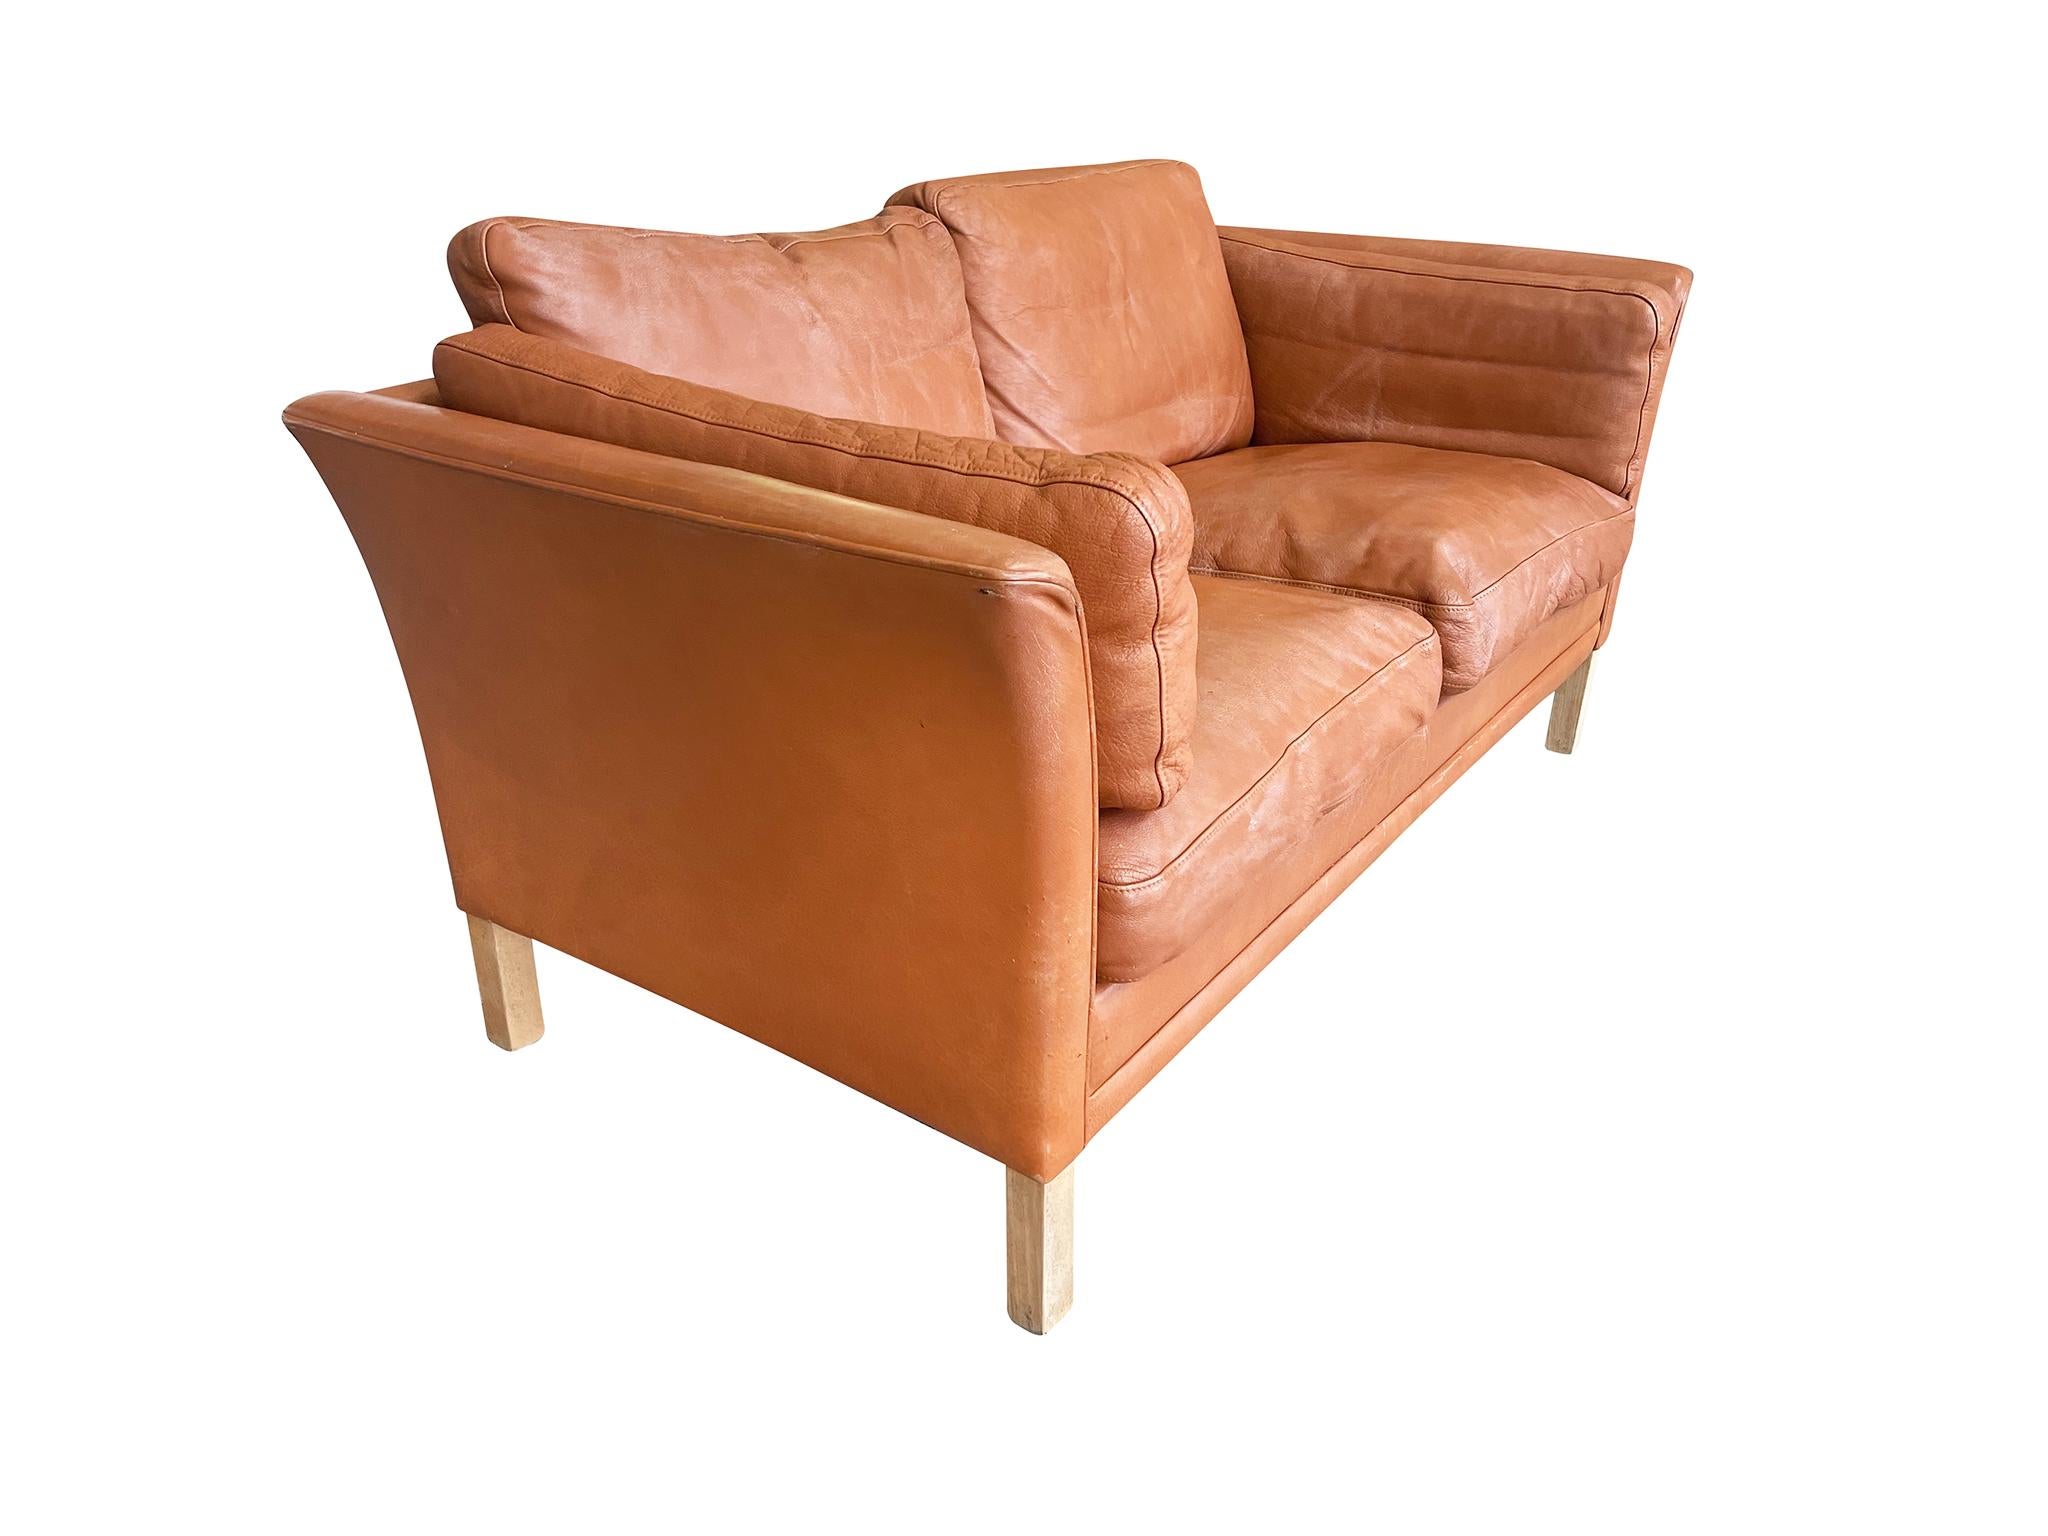 Dänisches Modernes Sofa aus der Jahrhundertmitte von Mogens Hansen. Die Polsterung besteht aus einem kräftigen cognacfarbenen Leder. Die Sitzfläche, die Rückenlehne und die Seiten bestehen aus 6 separaten Kissen. Die Beine sind aus